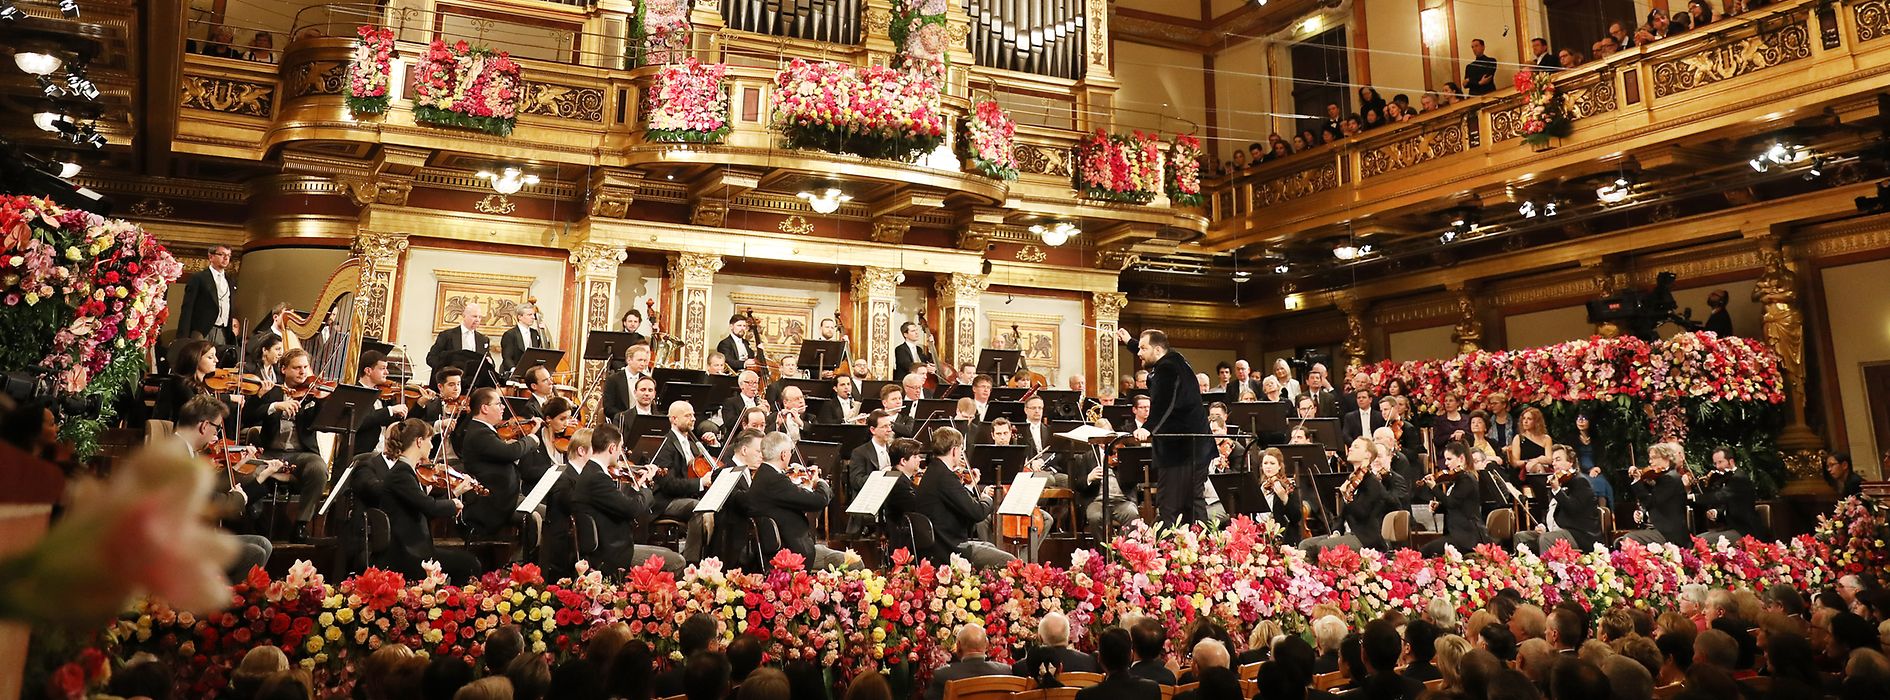 Concert du Nouvel An de l'Orchestre Philharmonique de Vienne dans la Salle dorée du Musikverein